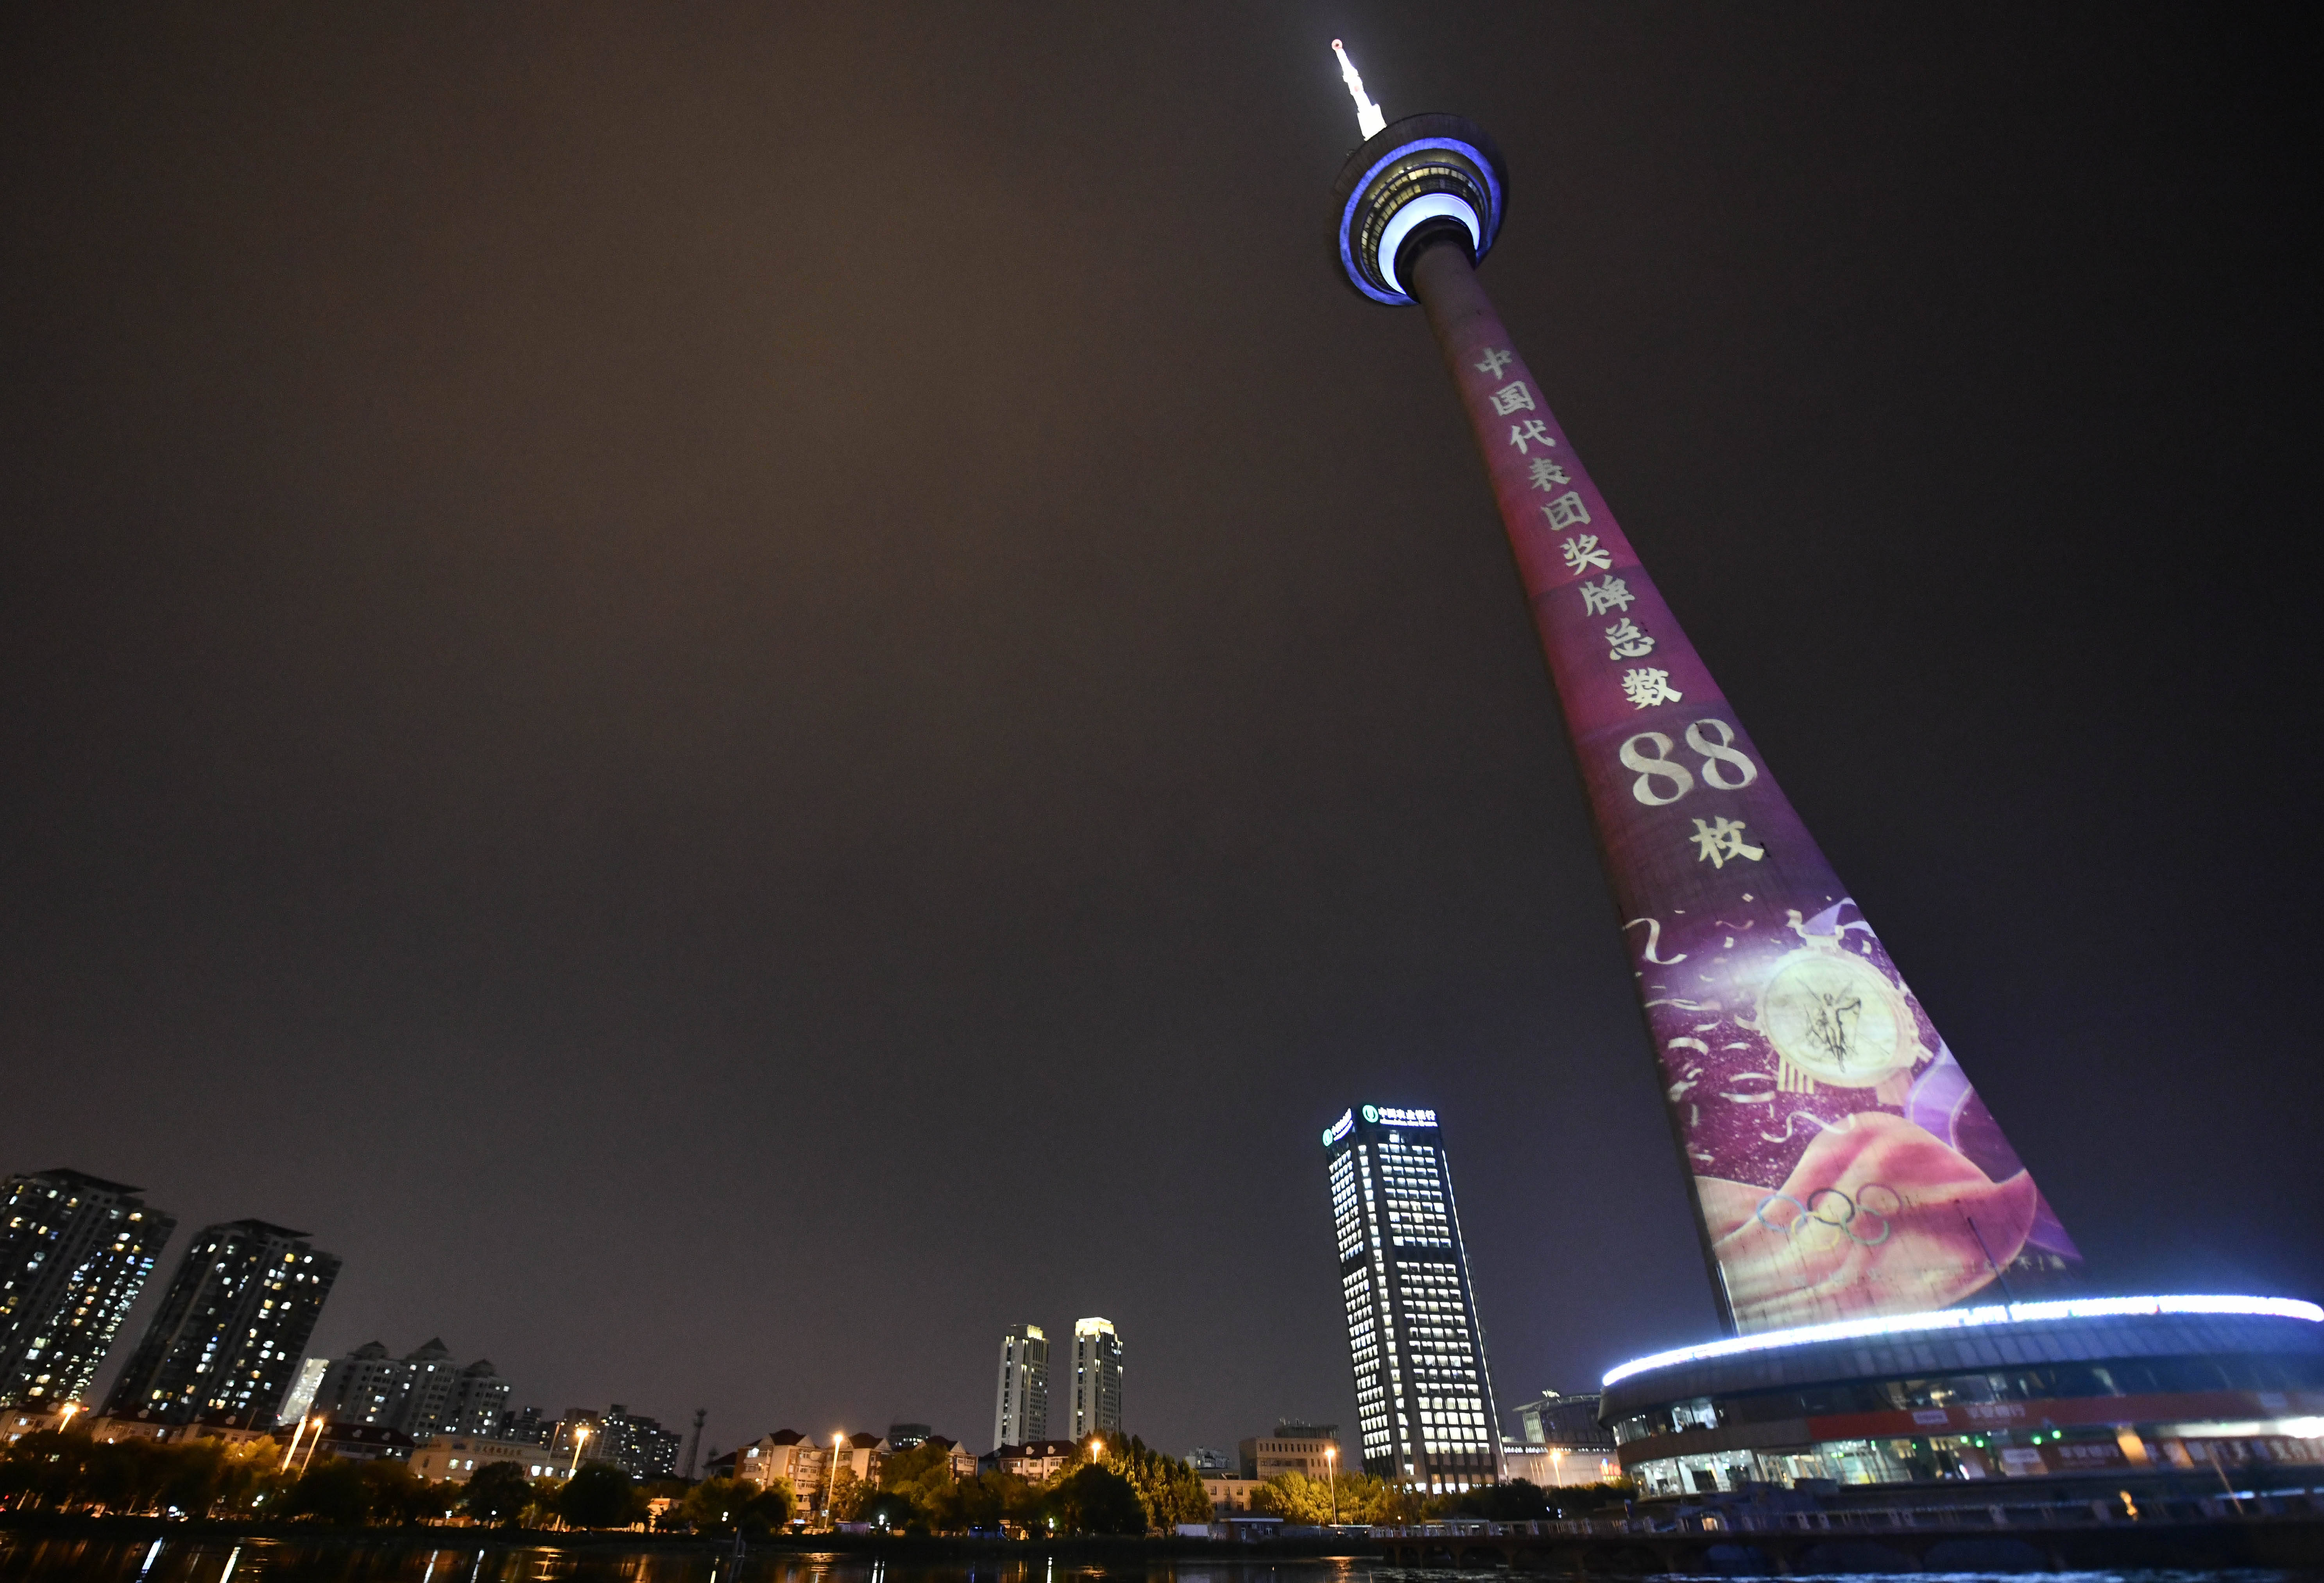 天津电视塔夜景图片图片